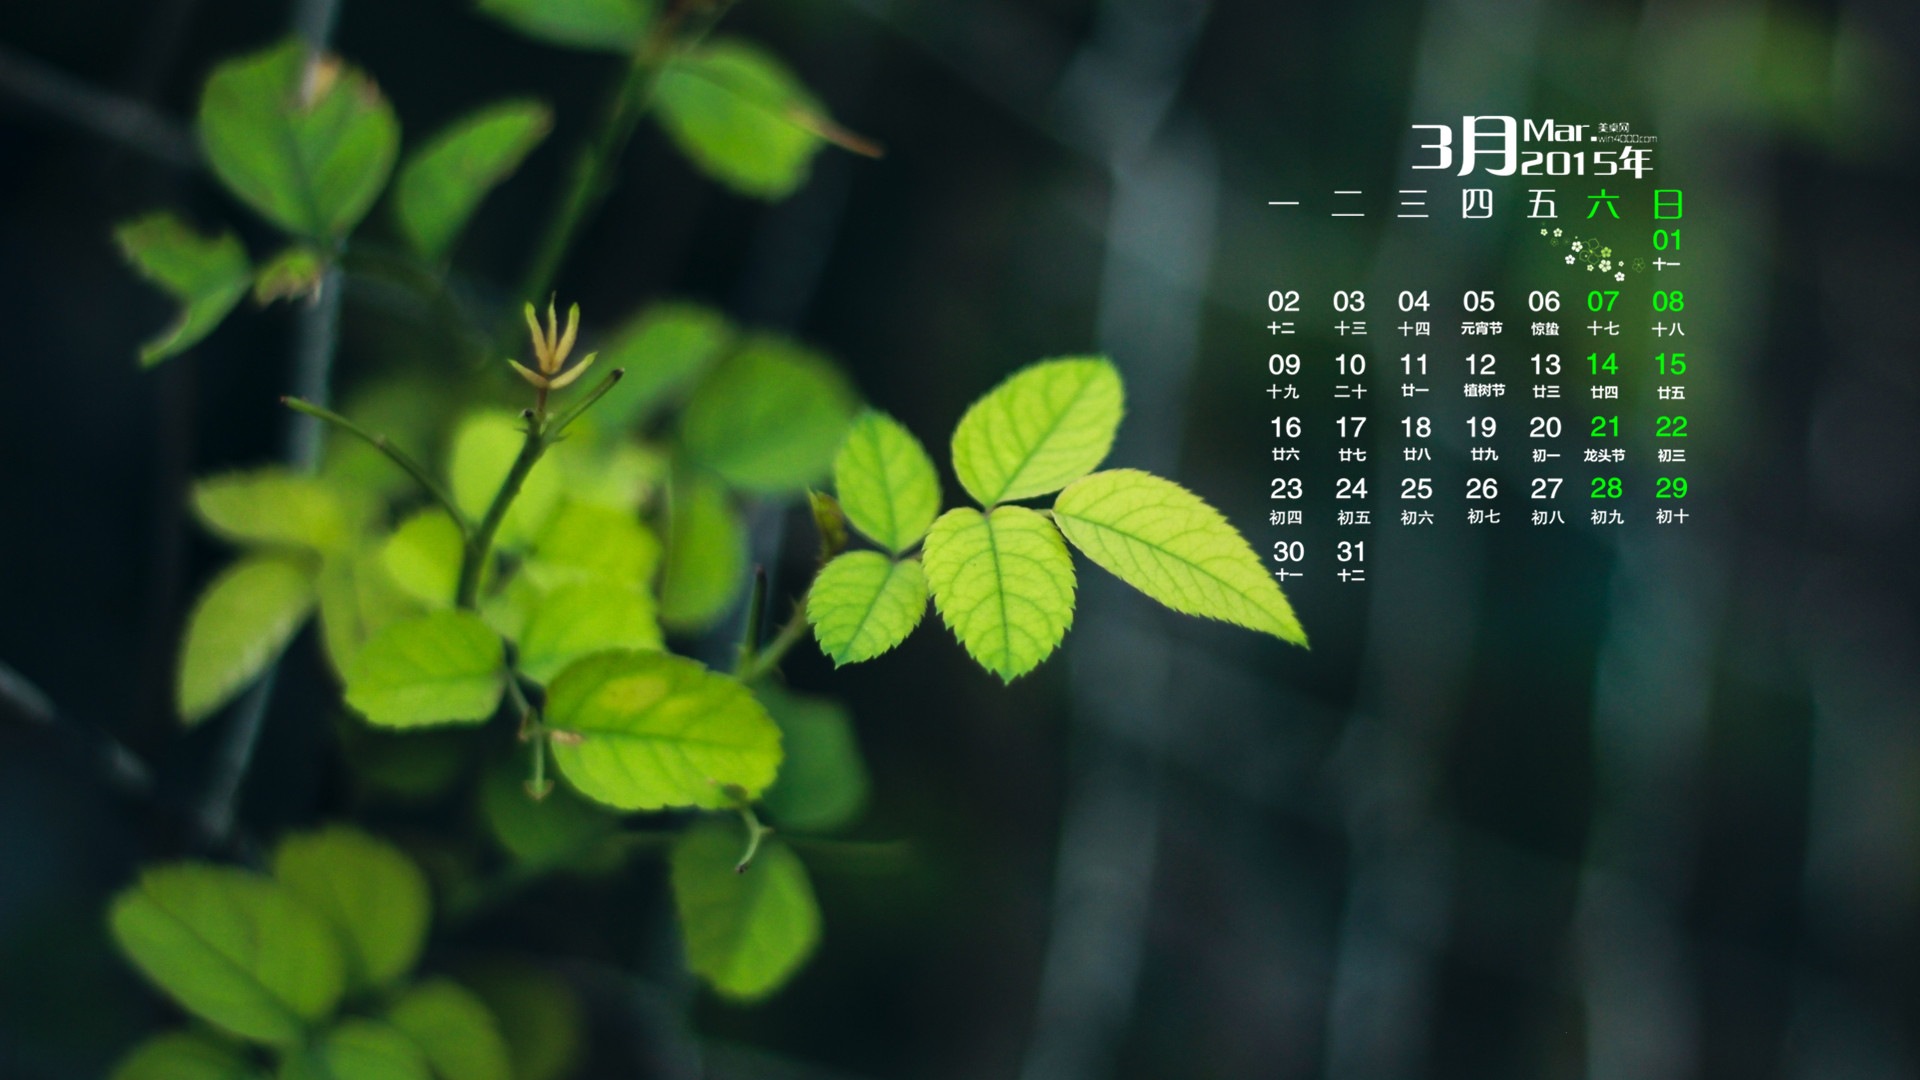 March 2015 Calendar wallpaper (1) #19 - 1920x1080